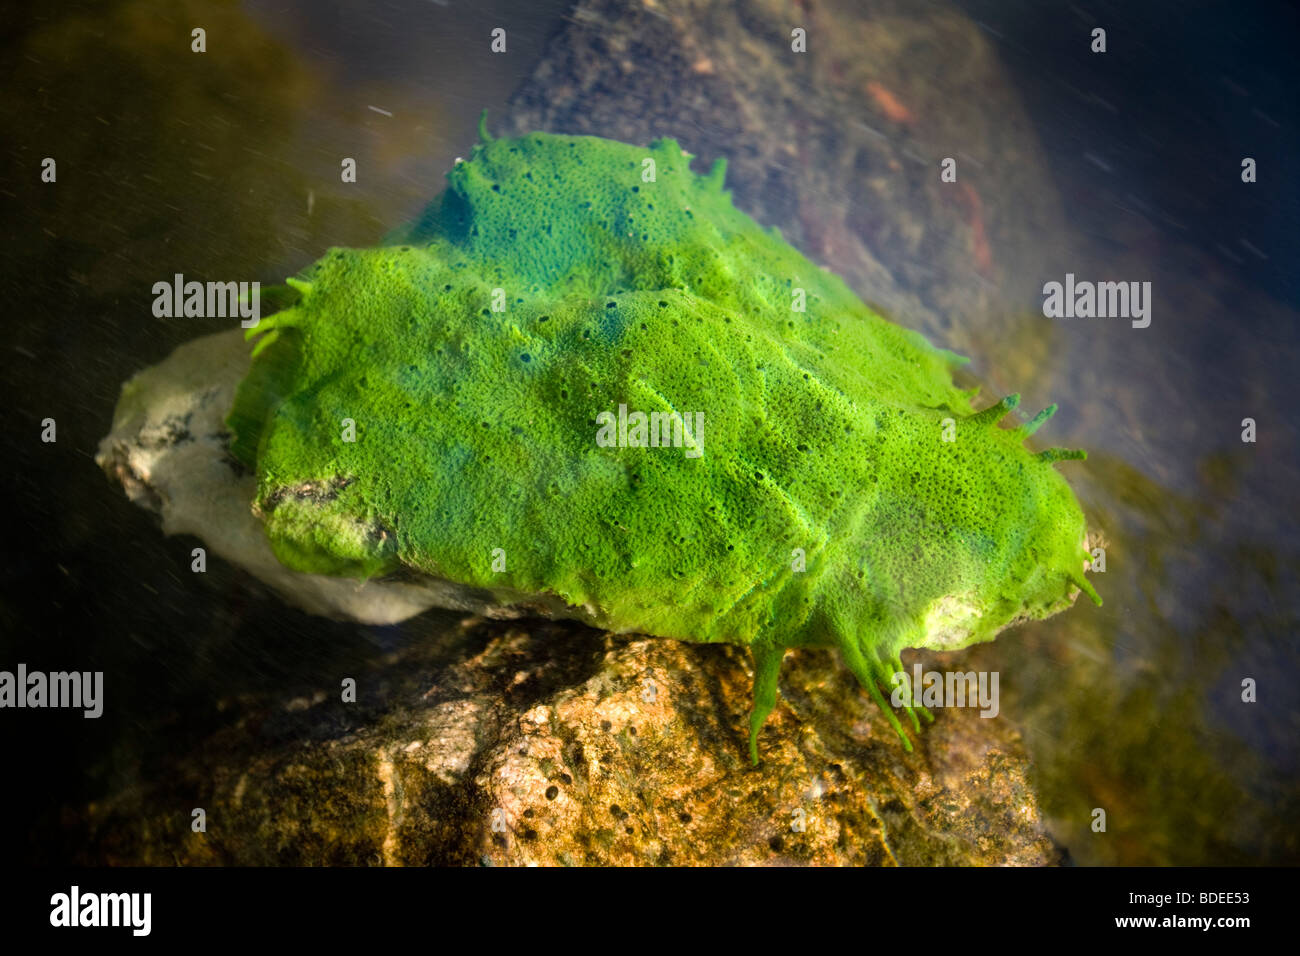 A freshwater sponge (Spongilla lacustris) in the Allier river (France). Éponge d'eau douce dans la rivière Allier (France). Stock Photo